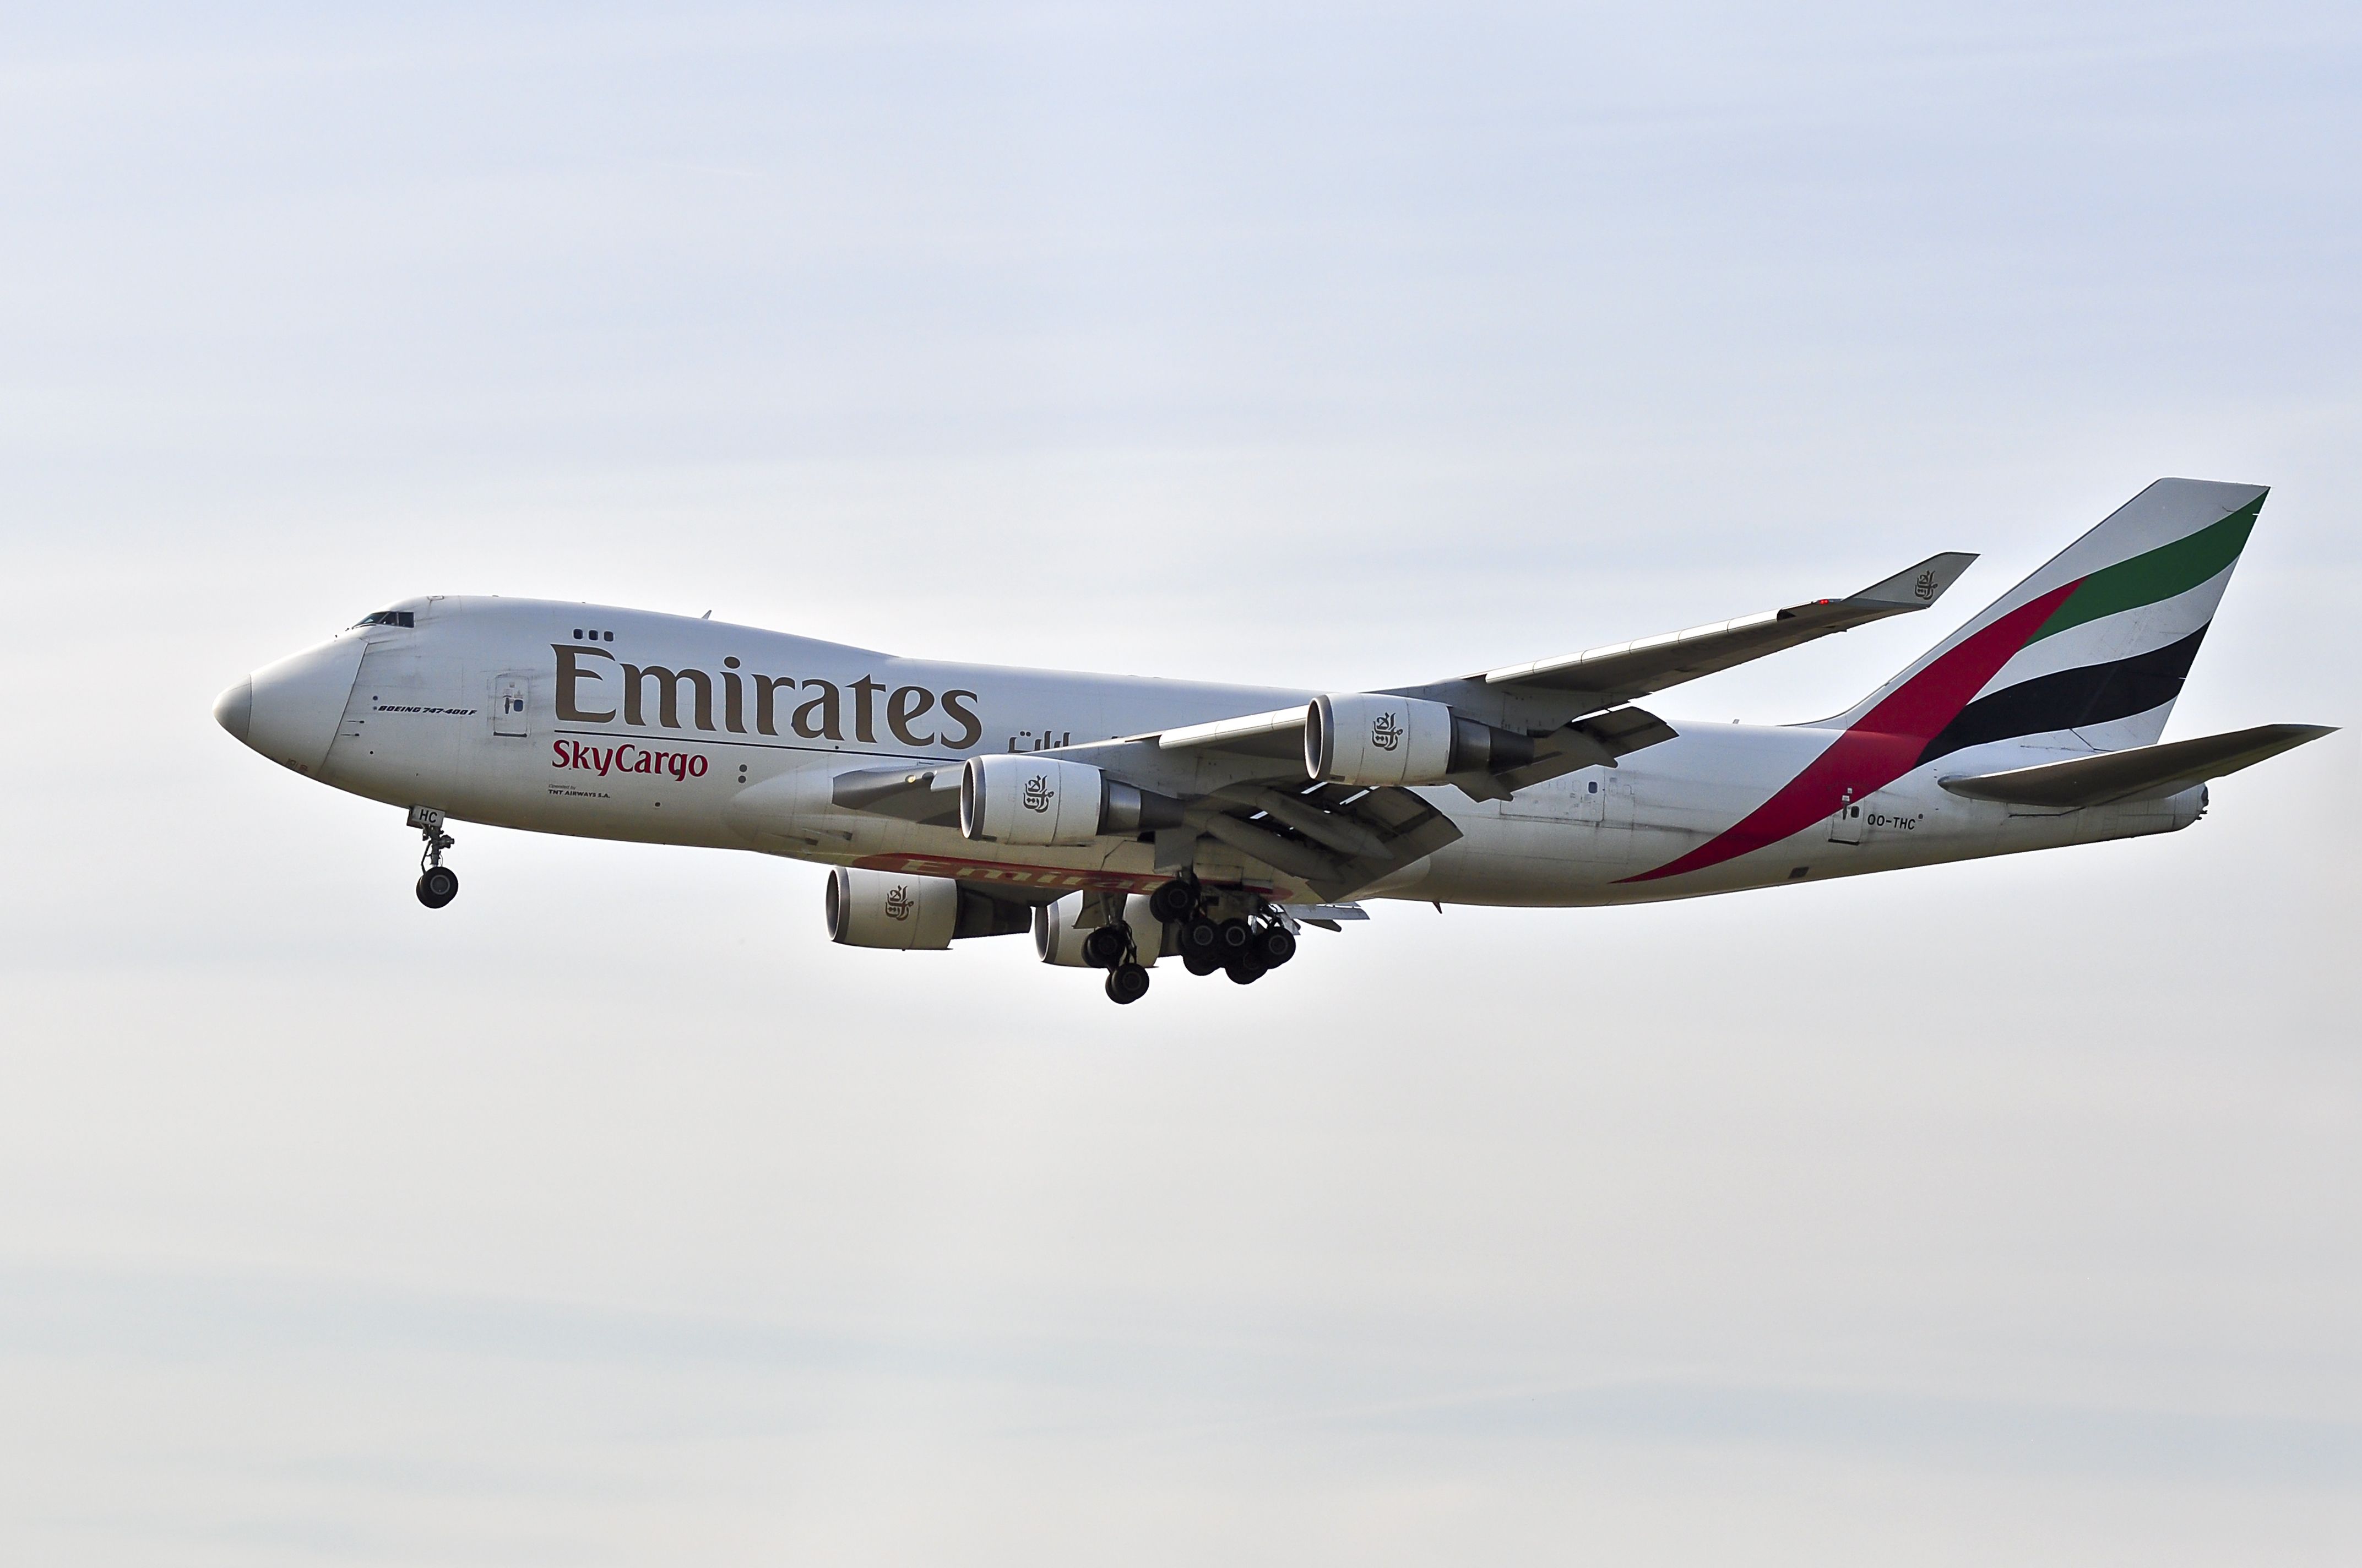 Emirates Boeing 747-400F